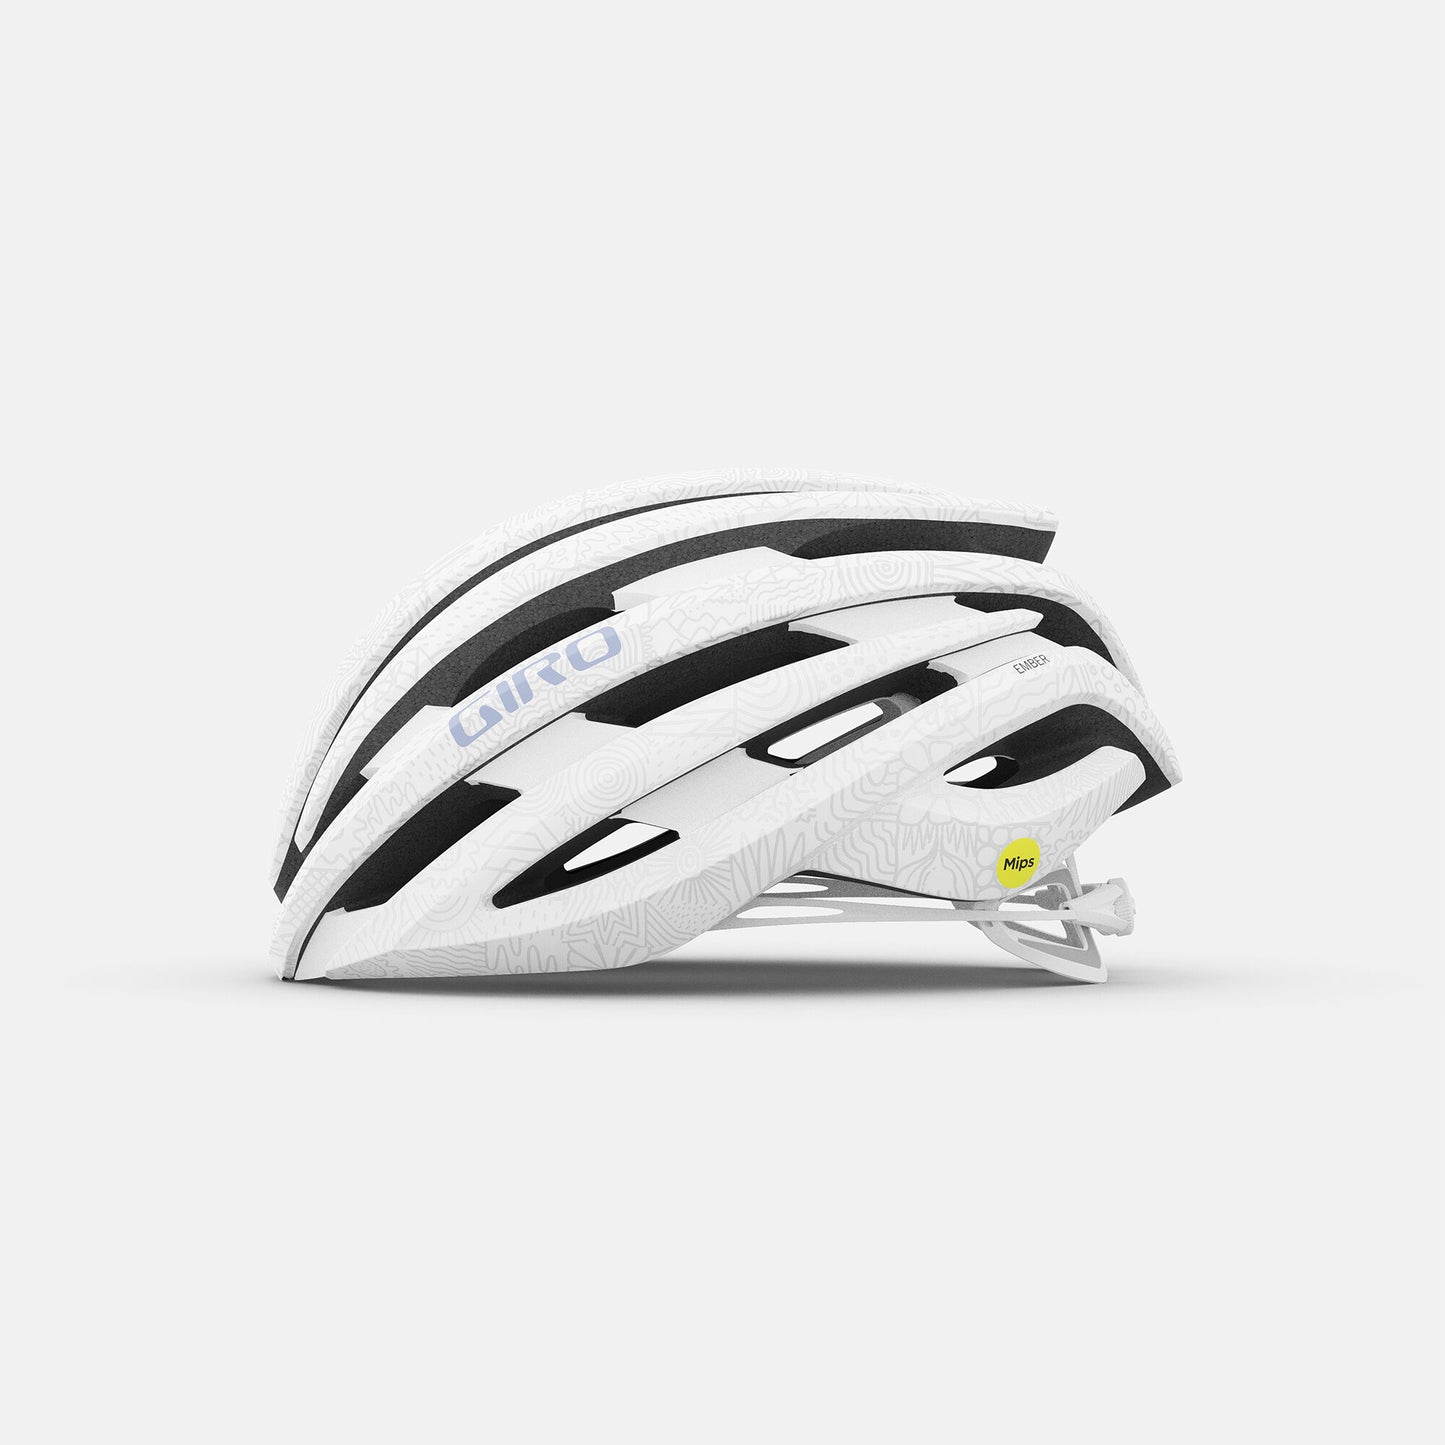 Giro Women's Ember MIPS Helmet Matte Pearl White Bike Helmets